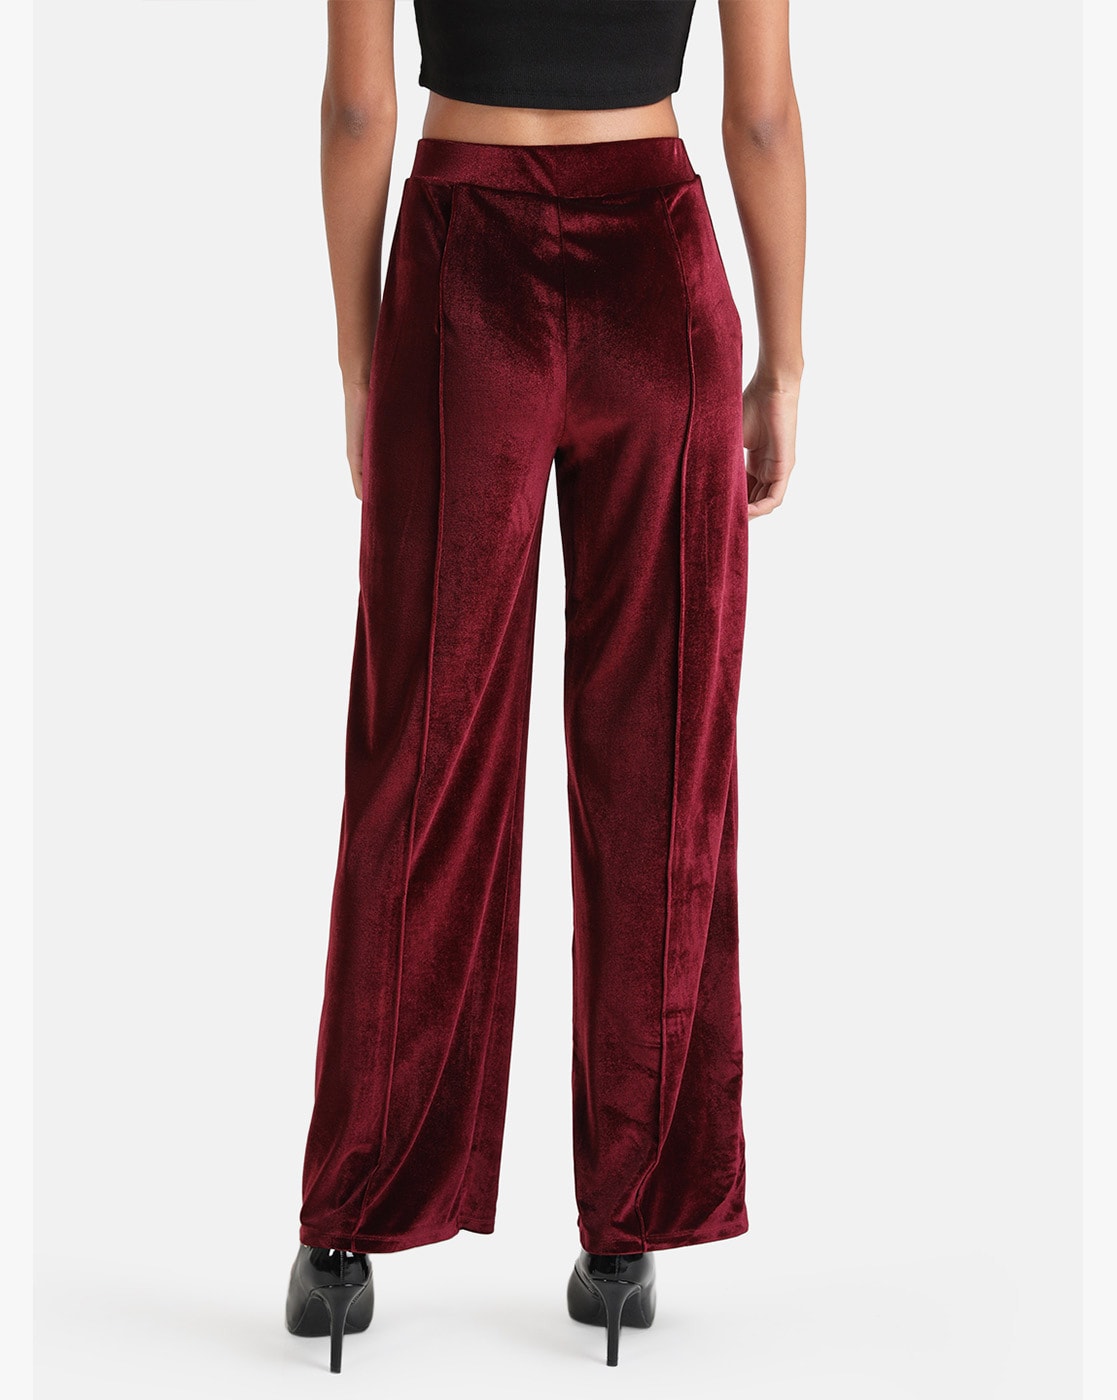 Ralph Lauren Women's Stretch Velvet High-Rise Skinny Pants | eBay